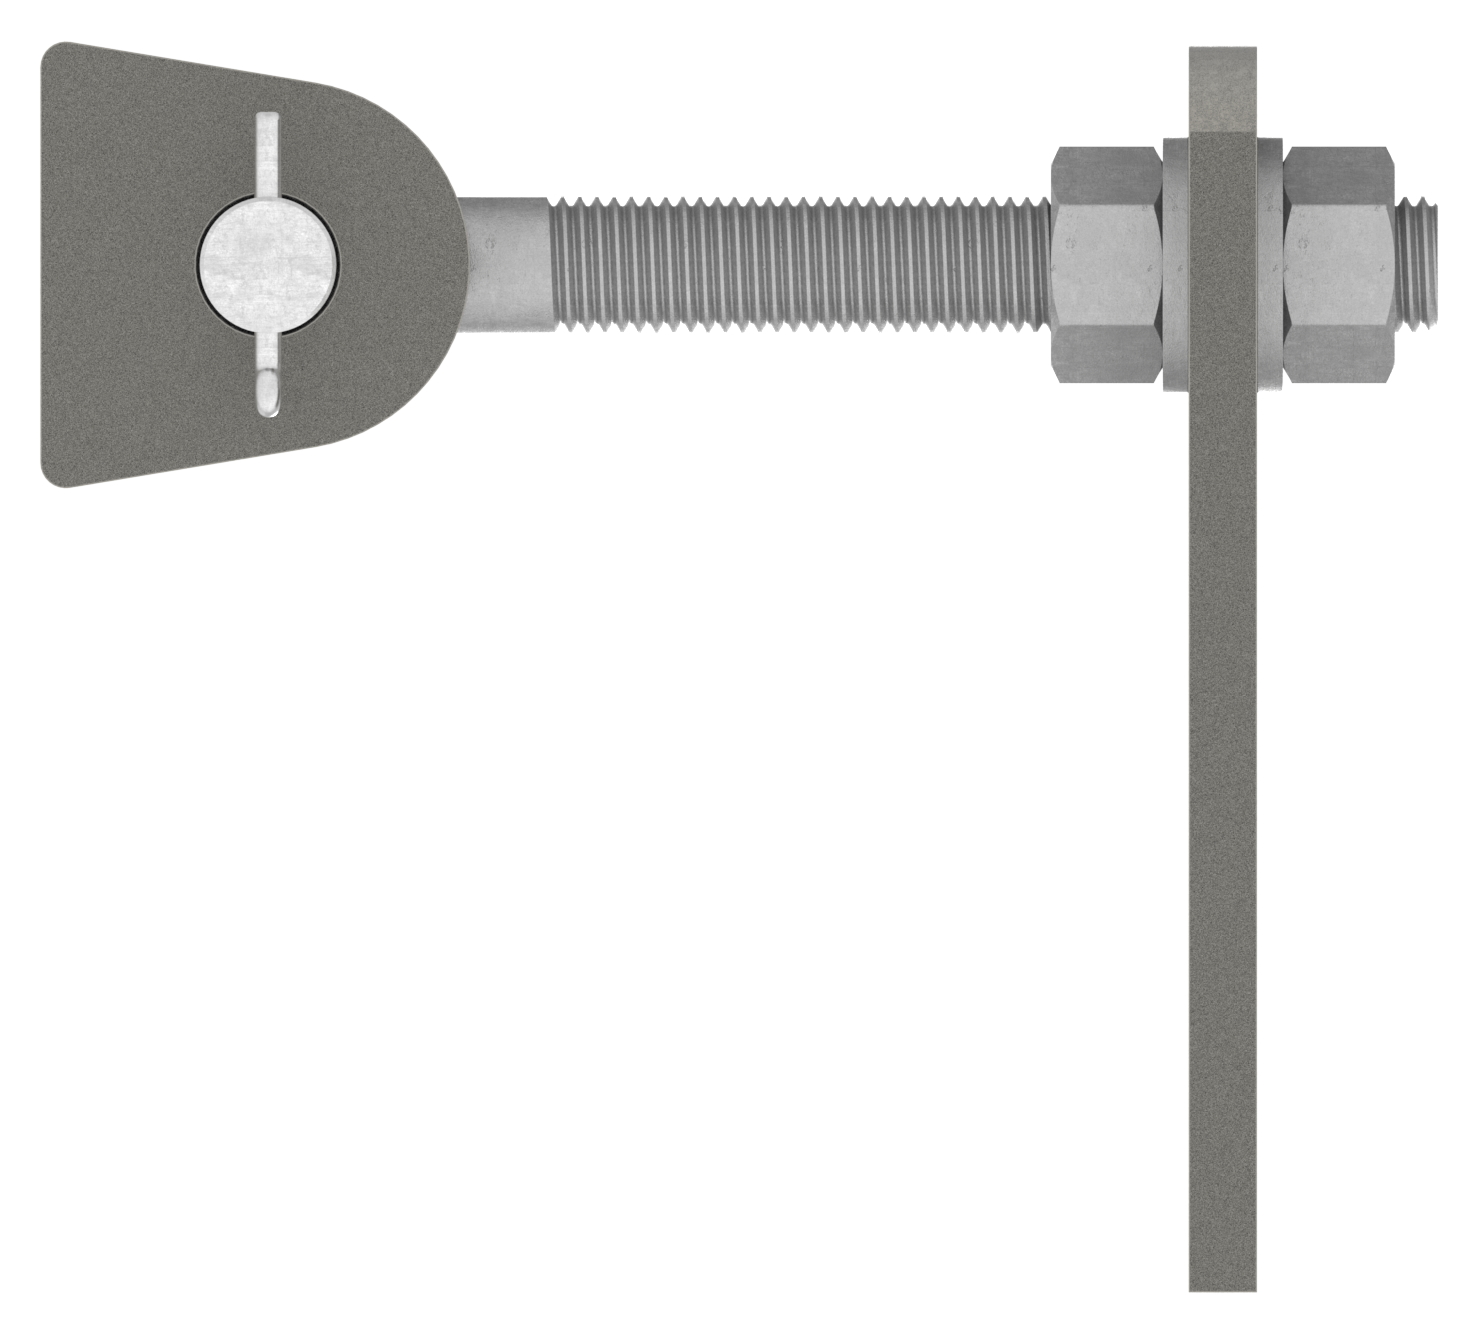 Torband M16, feuerverzinkt, mit Edelstahlbolzen